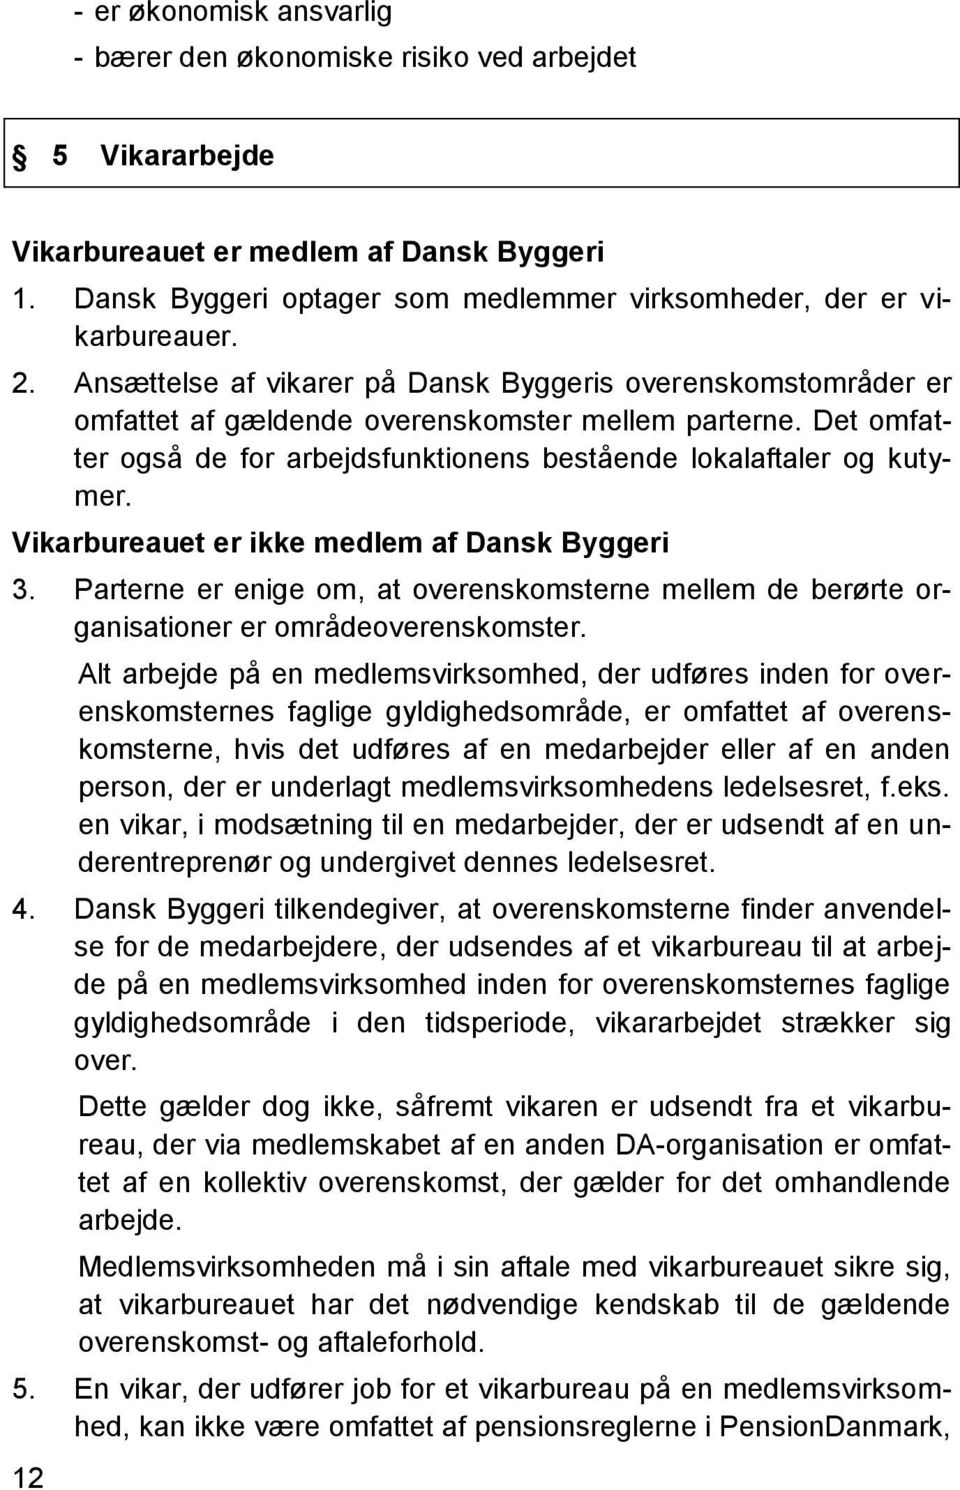 Vikarbureauet er ikke medlem af Dansk Byggeri 3. Parterne er enige om, at overenskomsterne mellem de berørte organisationer er områdeoverenskomster.